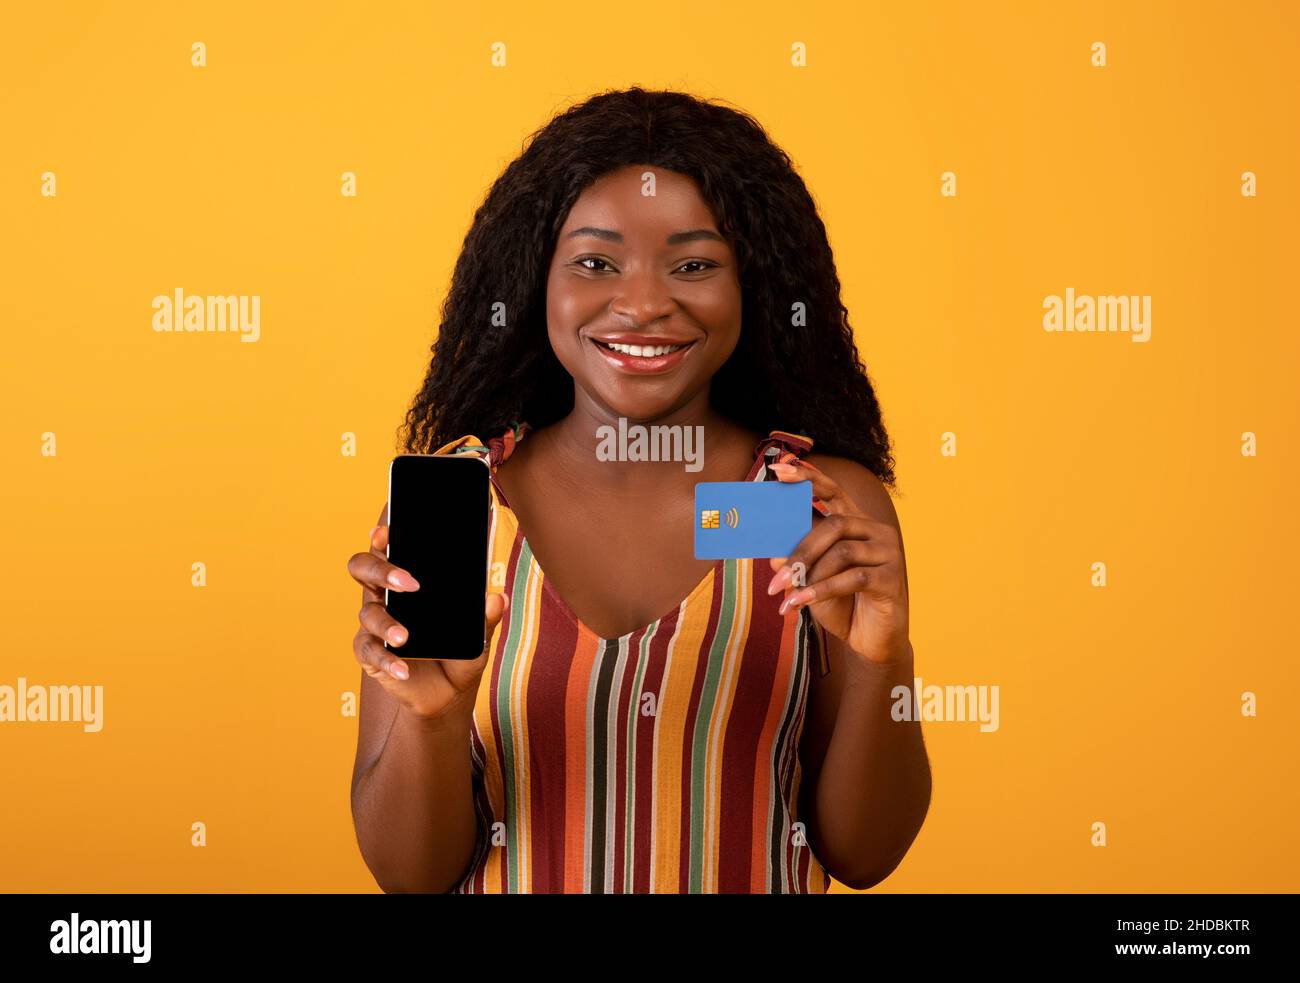 Neue tolle mobile Shopping-App. Fröhliche schwarze Frau zeigt Handy mit leerem Bildschirm und Kreditkarte Stockfoto